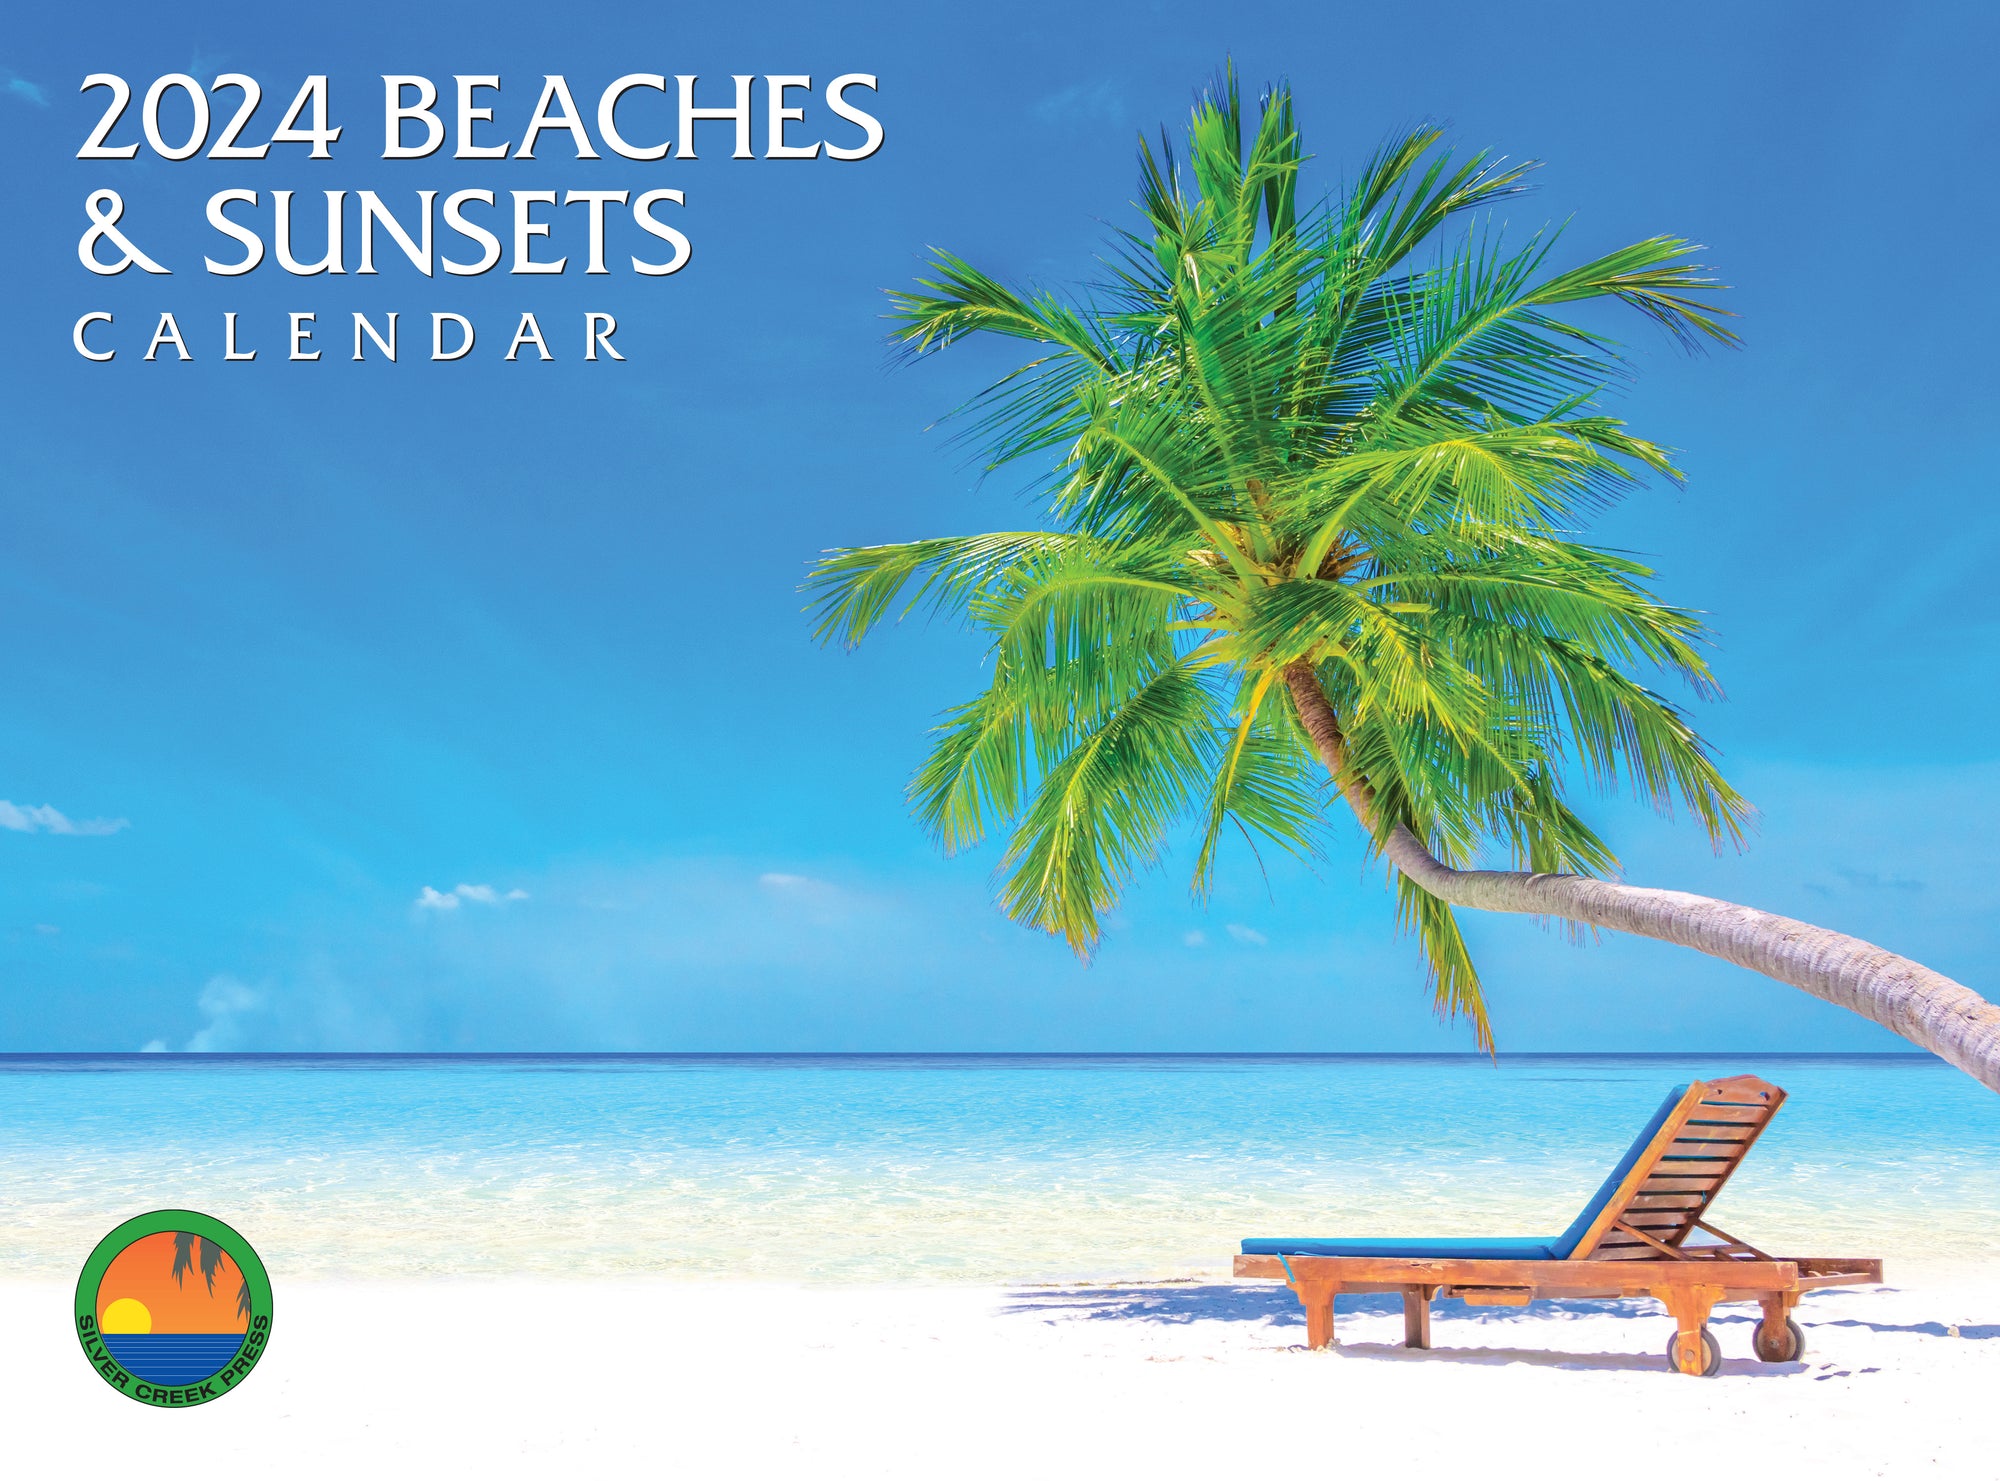 2024 Beaches & Sunsets Calendar